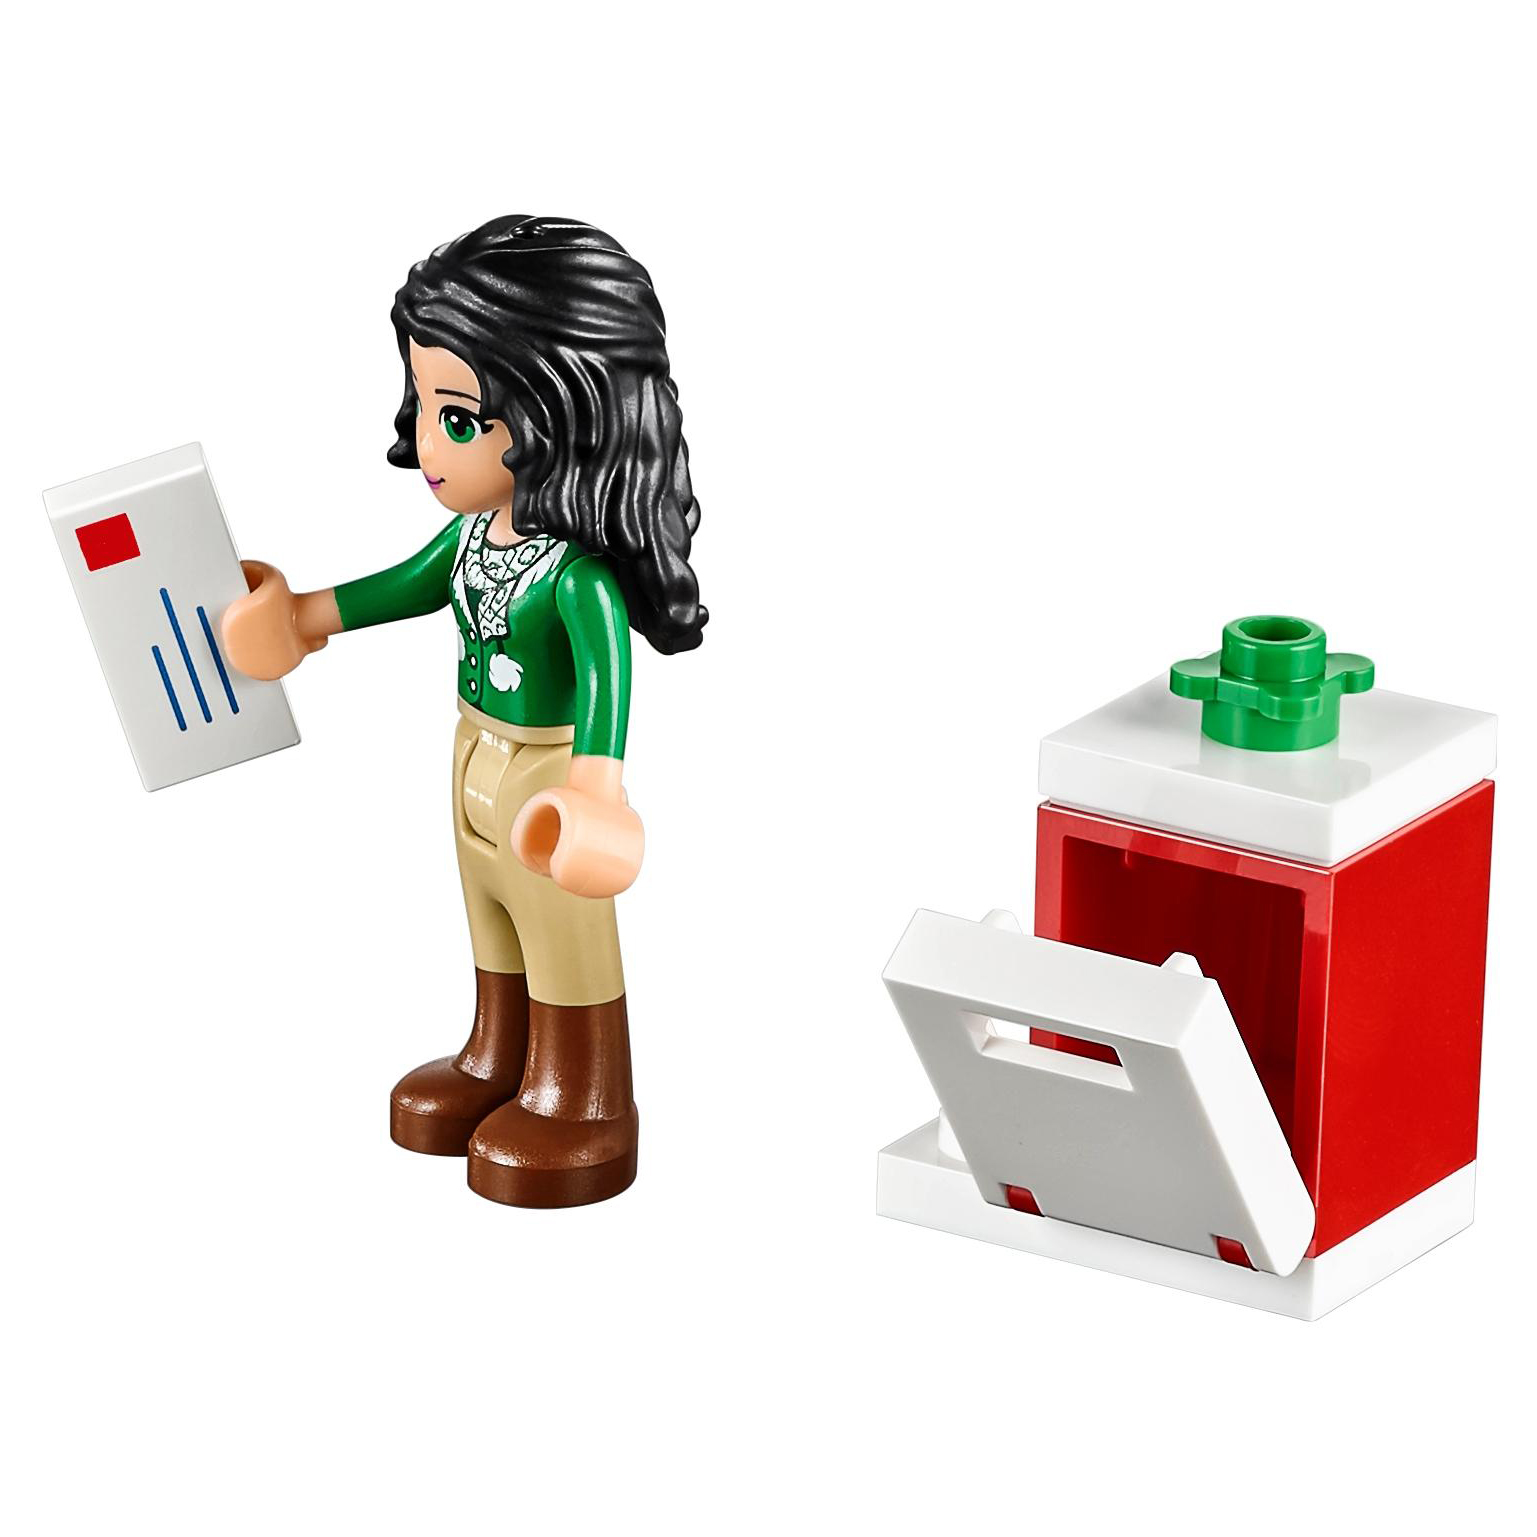 Конструктор LEGO Friends Новогодний календарь (41131) адвент календарь для девочек с фигурками littlest pet shop hasbro